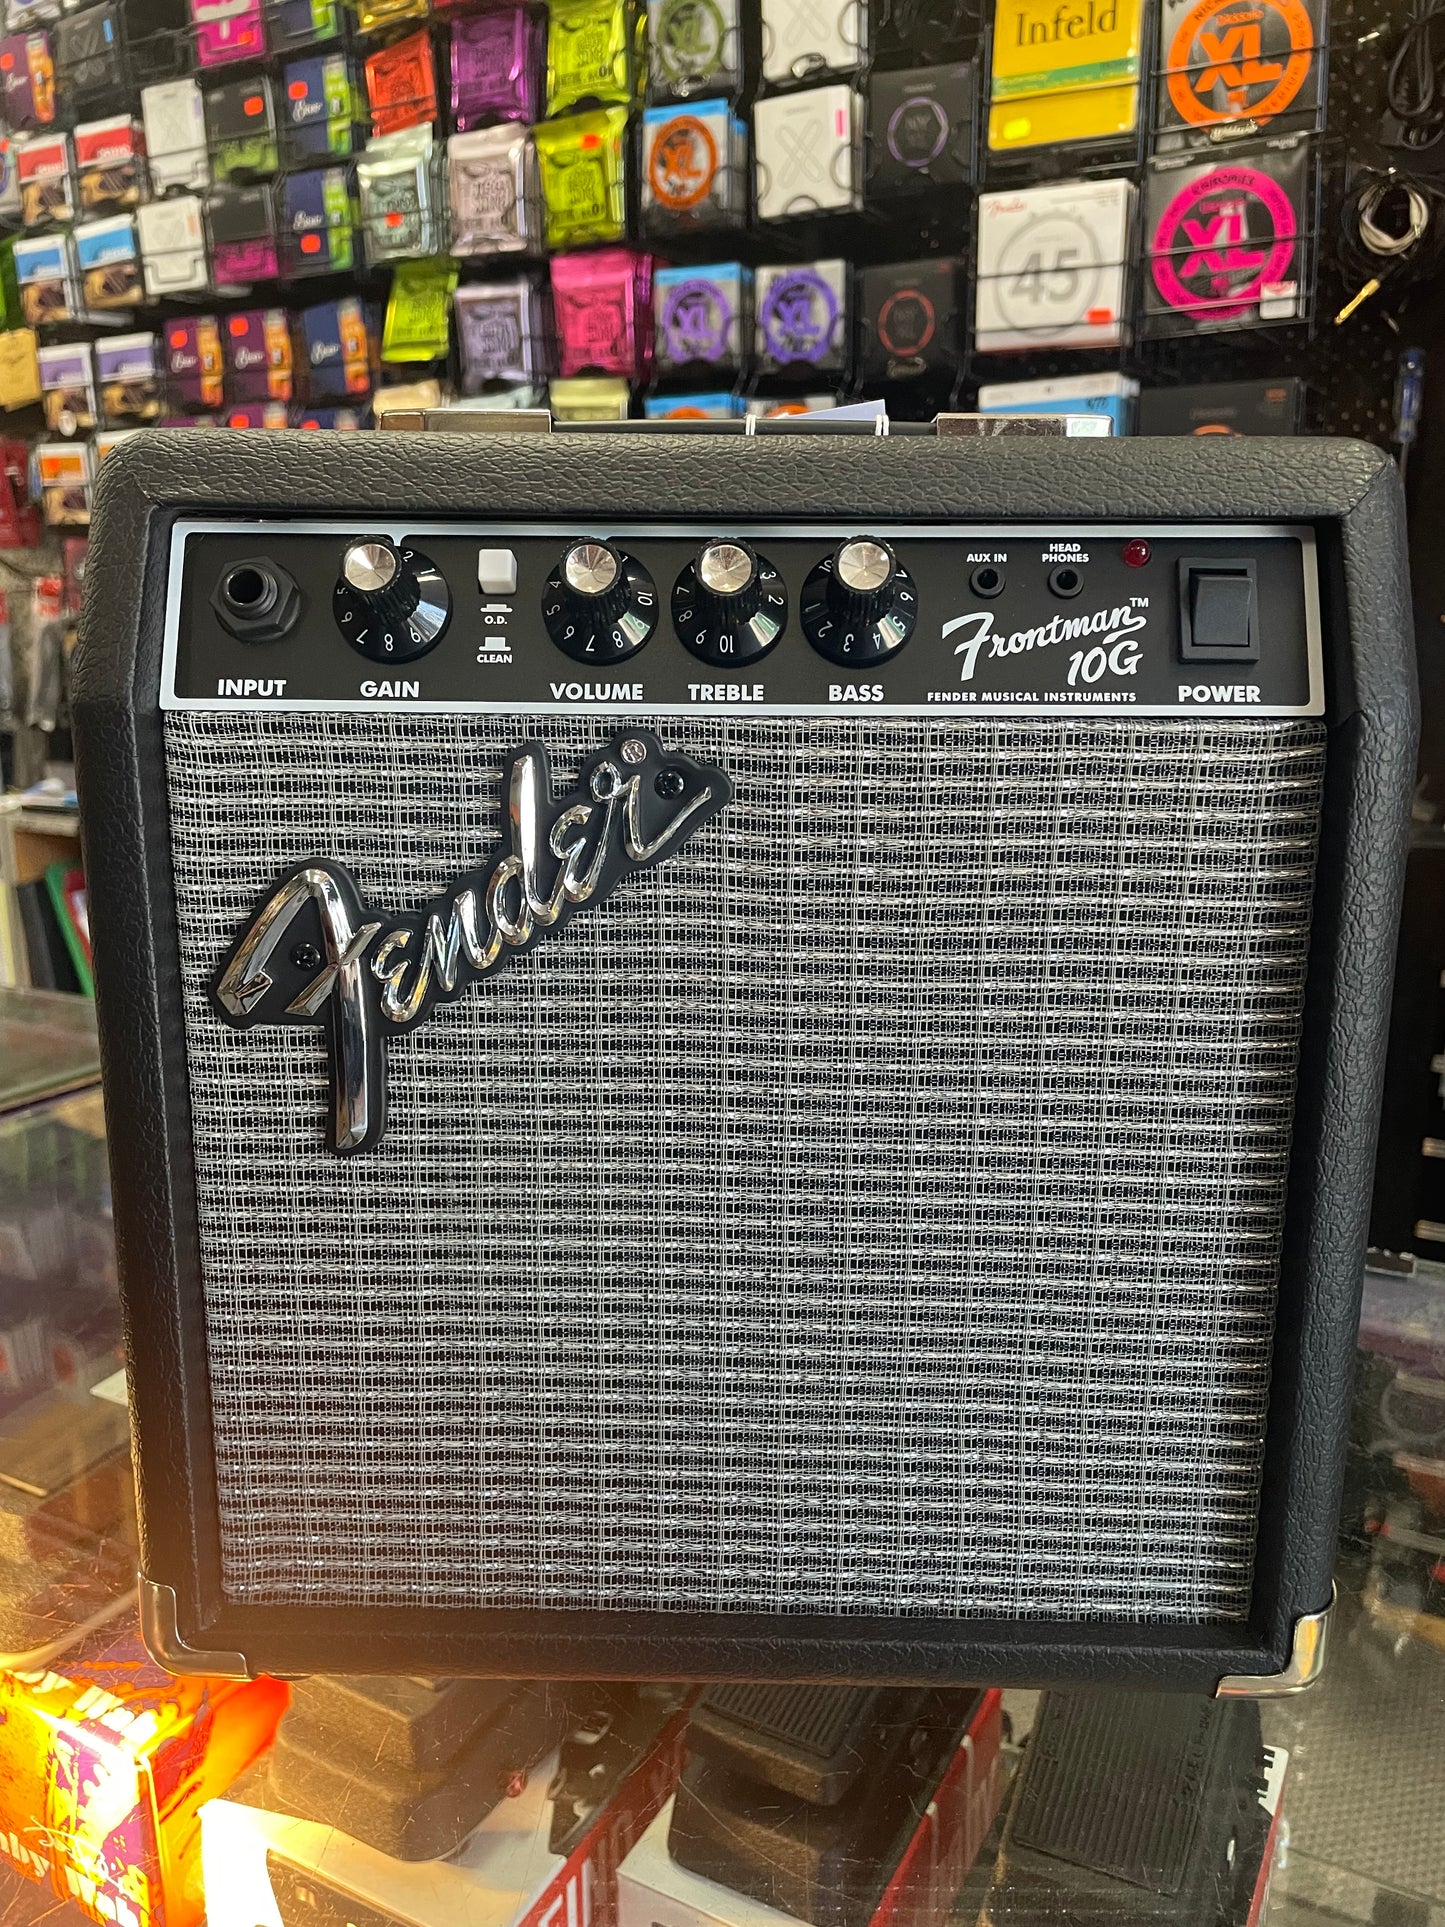 Fender Frontman 10G-10w Amplifier